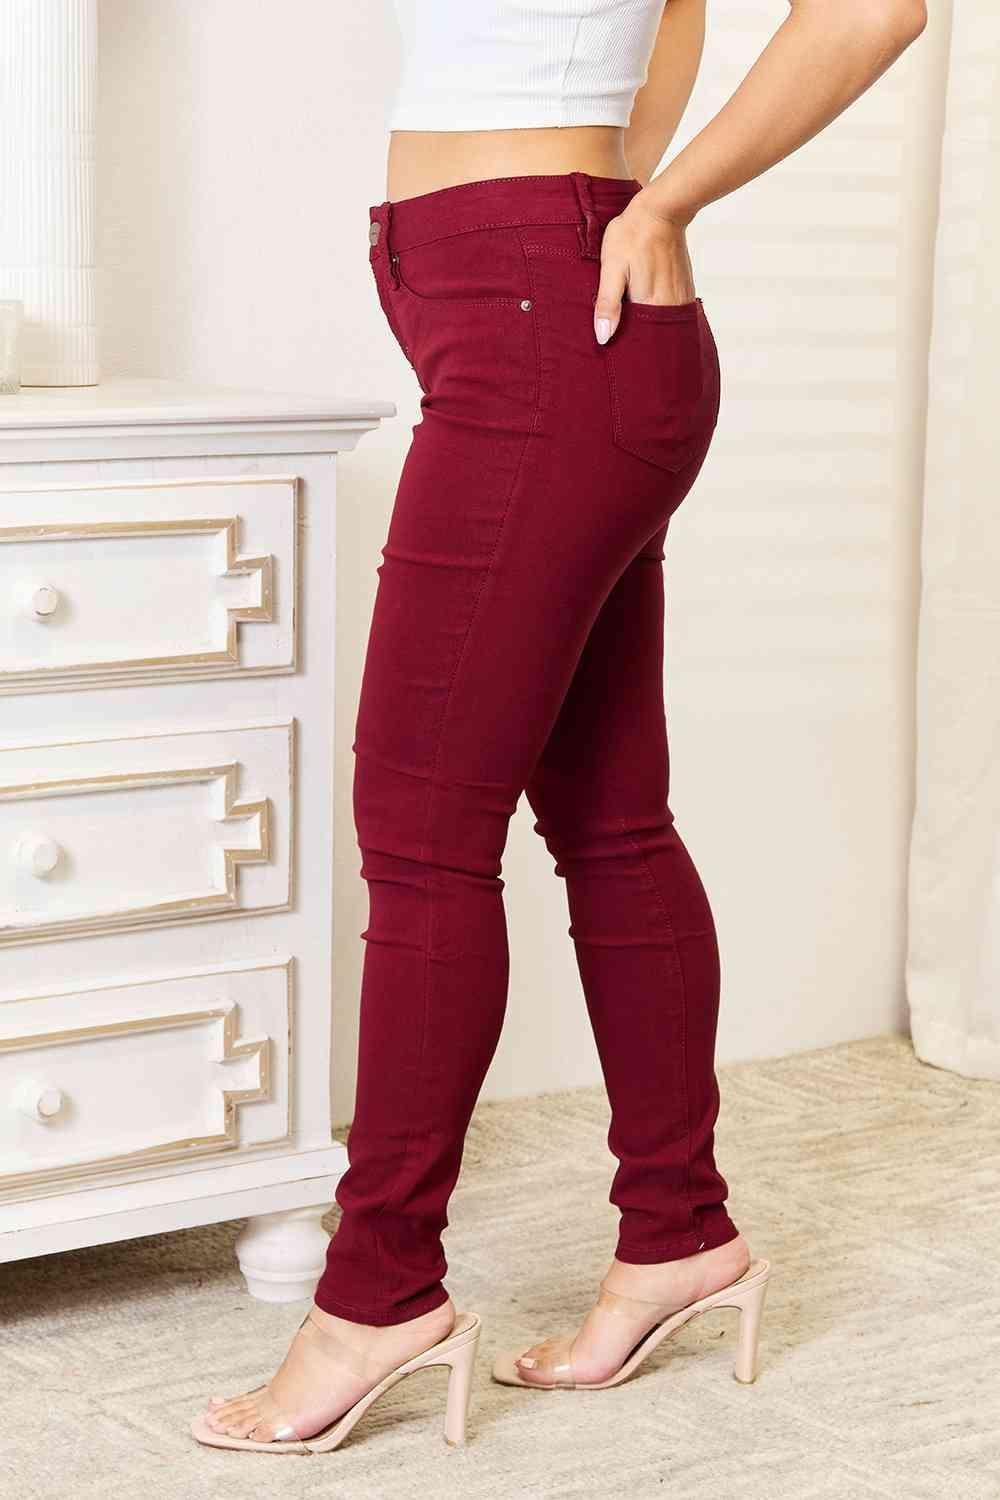 YMI Jeanswear Skinny Jeans with Pockets - Bona Fide Fashion